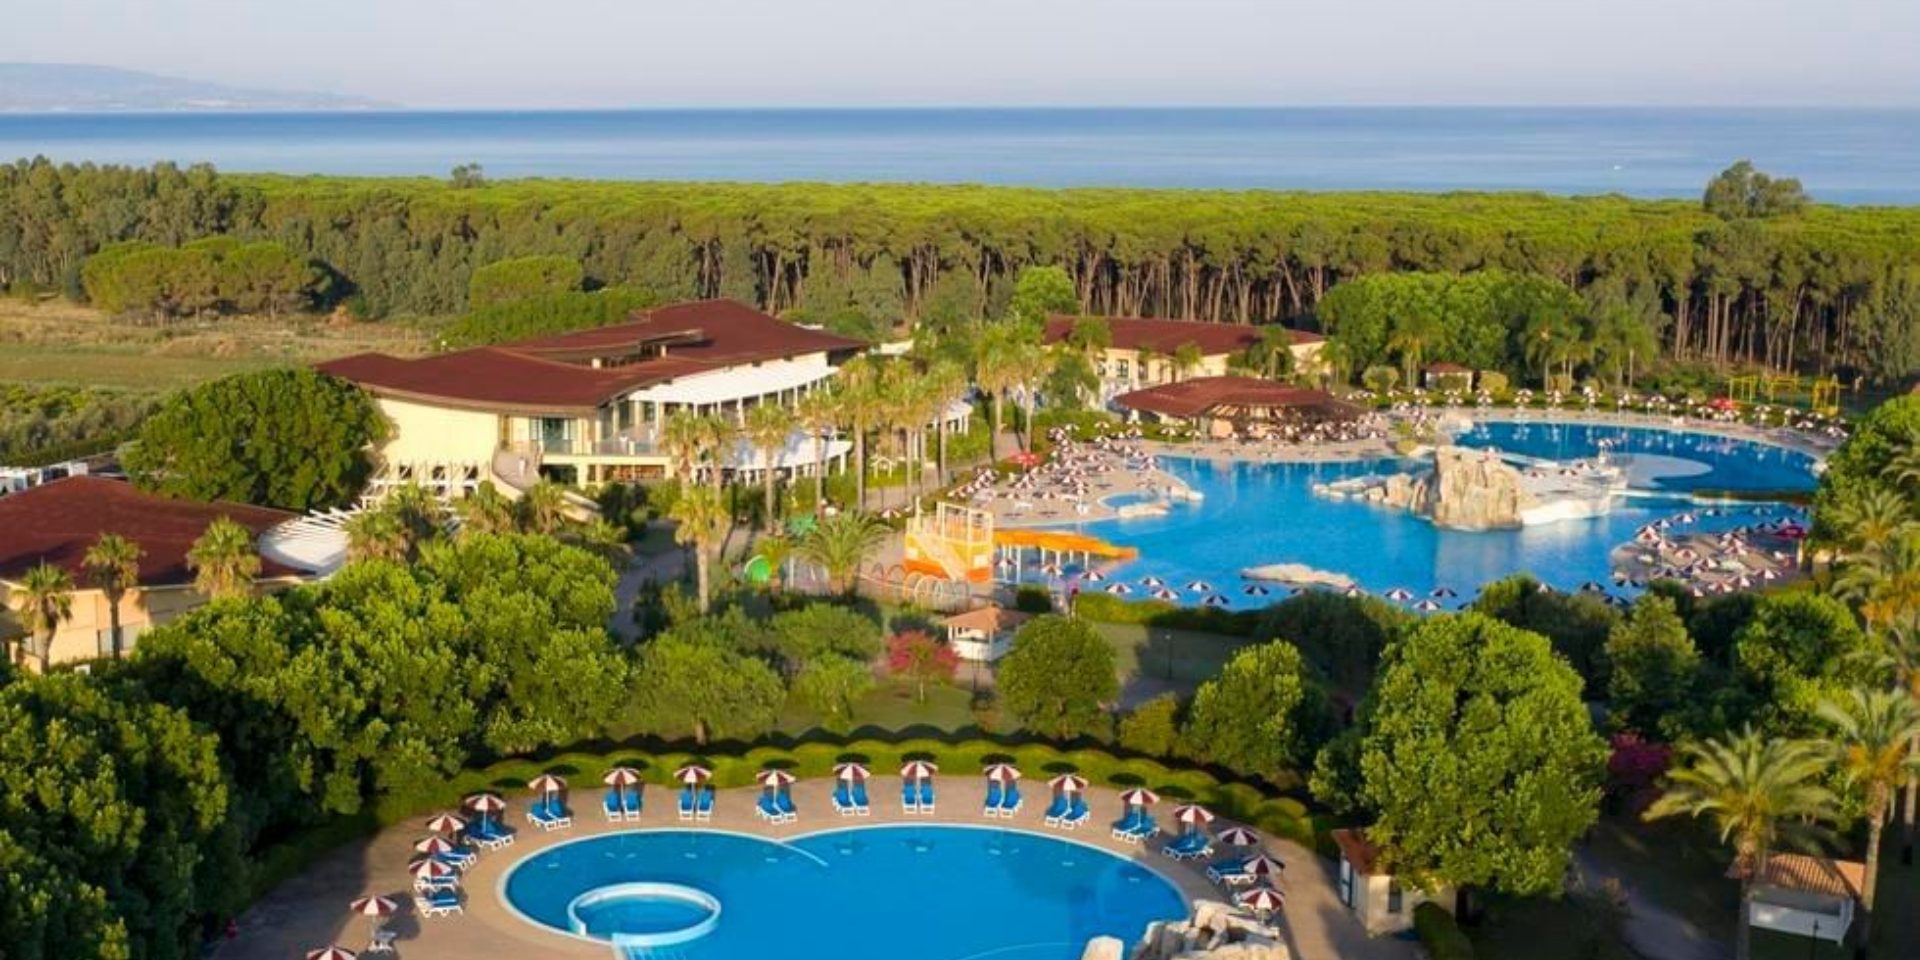 Falkensteiner resort Calabria